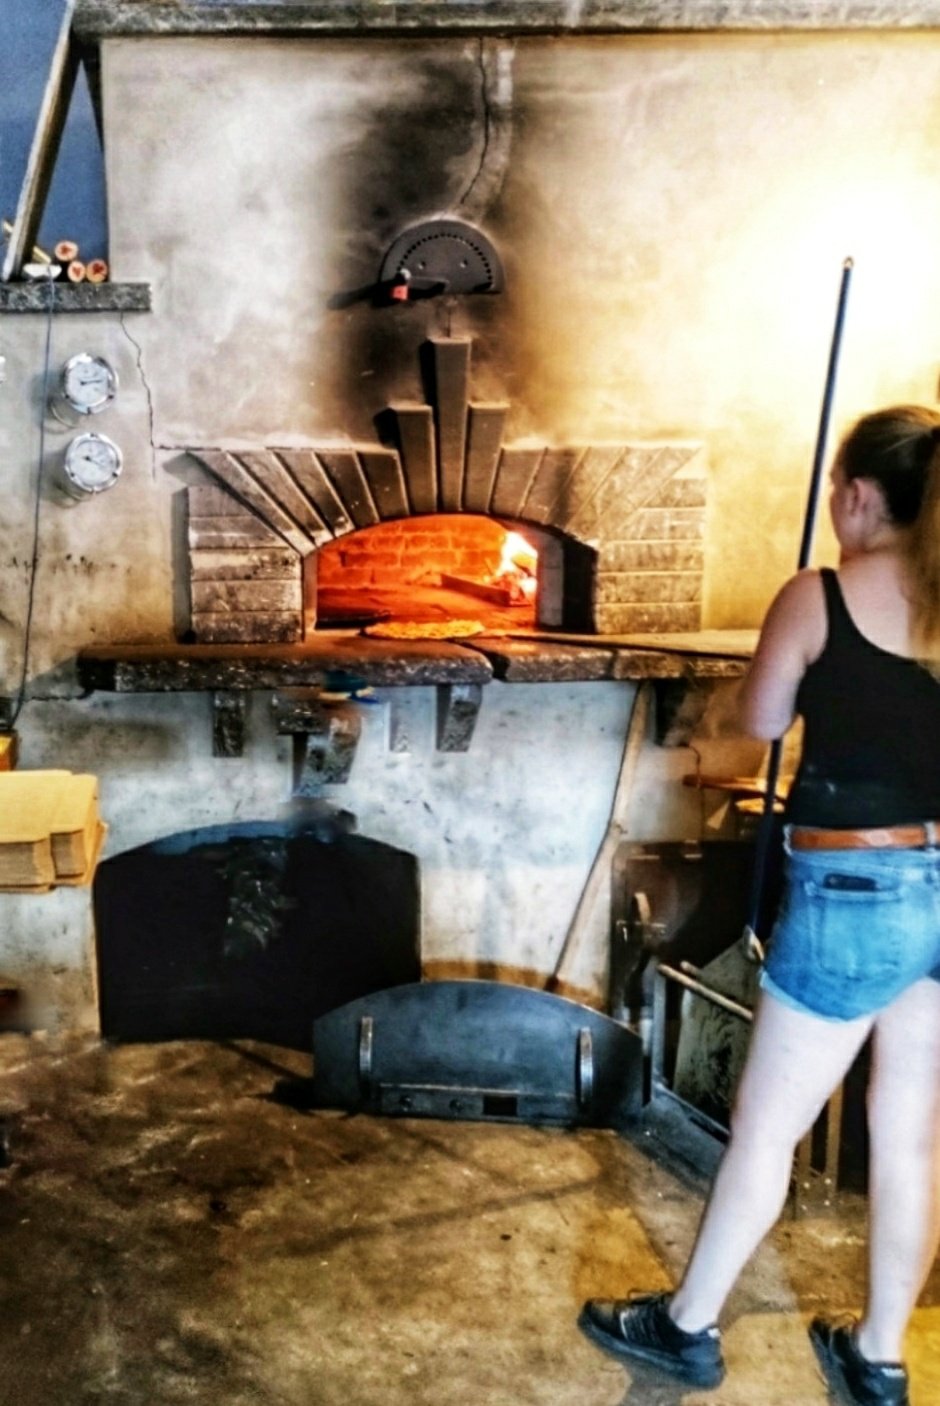 The brick oven hearth at Folino's Pizza, Shelburne, Vermont